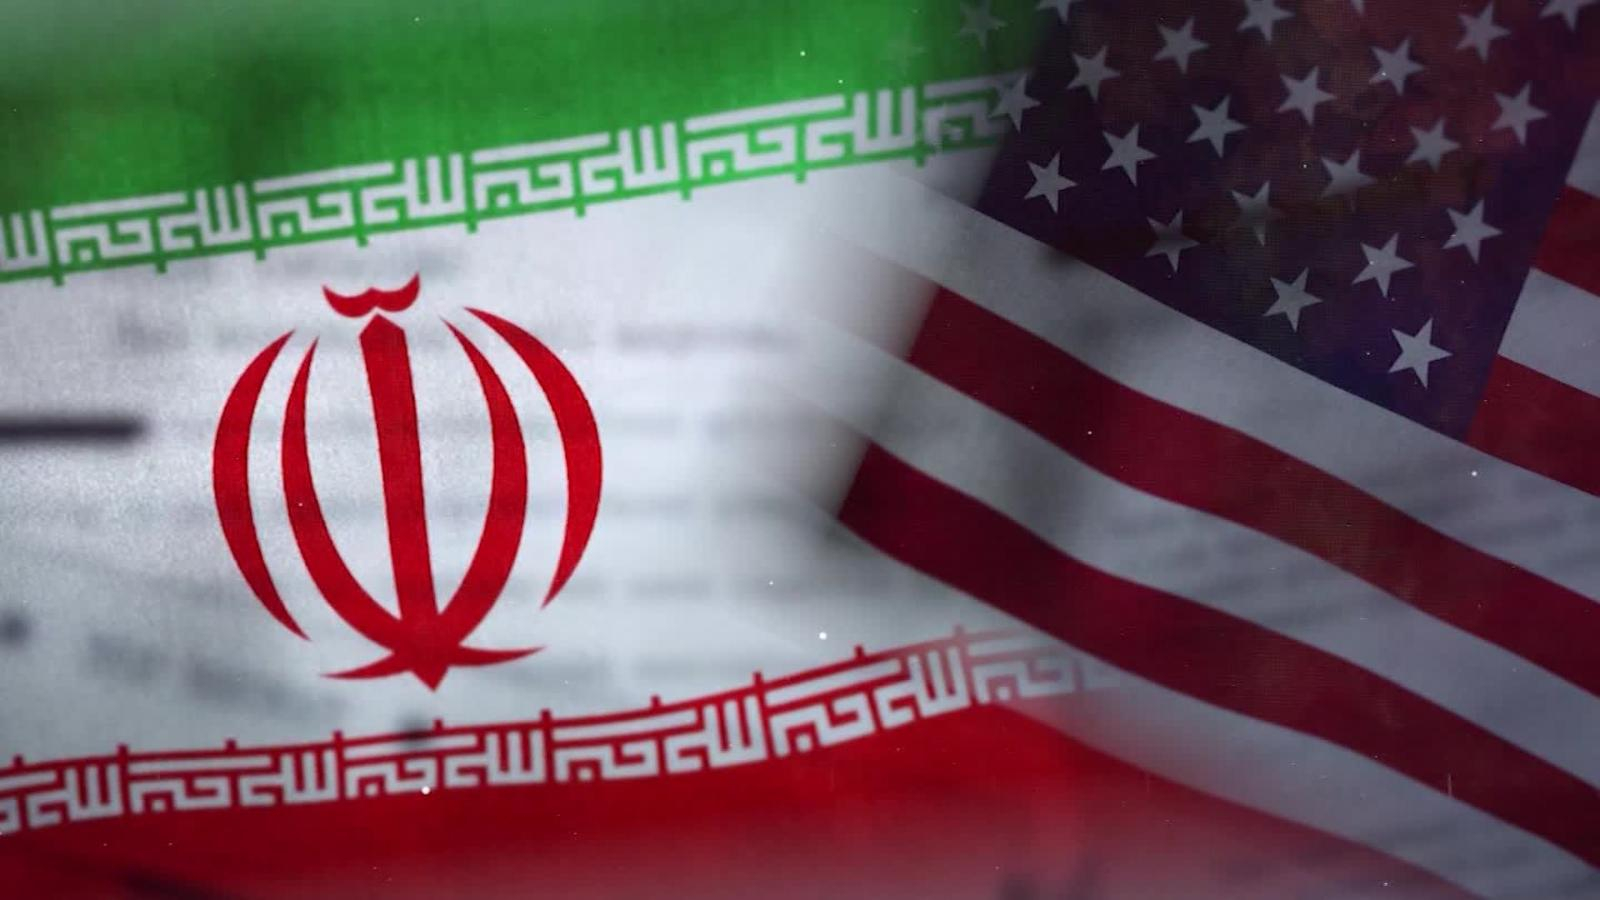 Irán esta dispuesto a dialogar con el próximo presidente de EE. UU. en relación al pacto nuclear